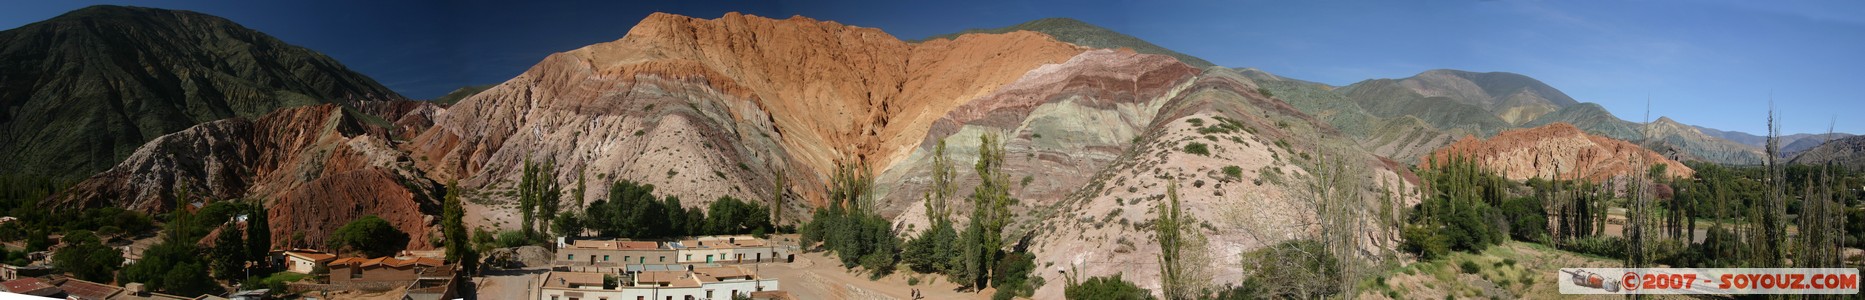 Purmamarca - Cerro de Siete Colores - vue panoramique
